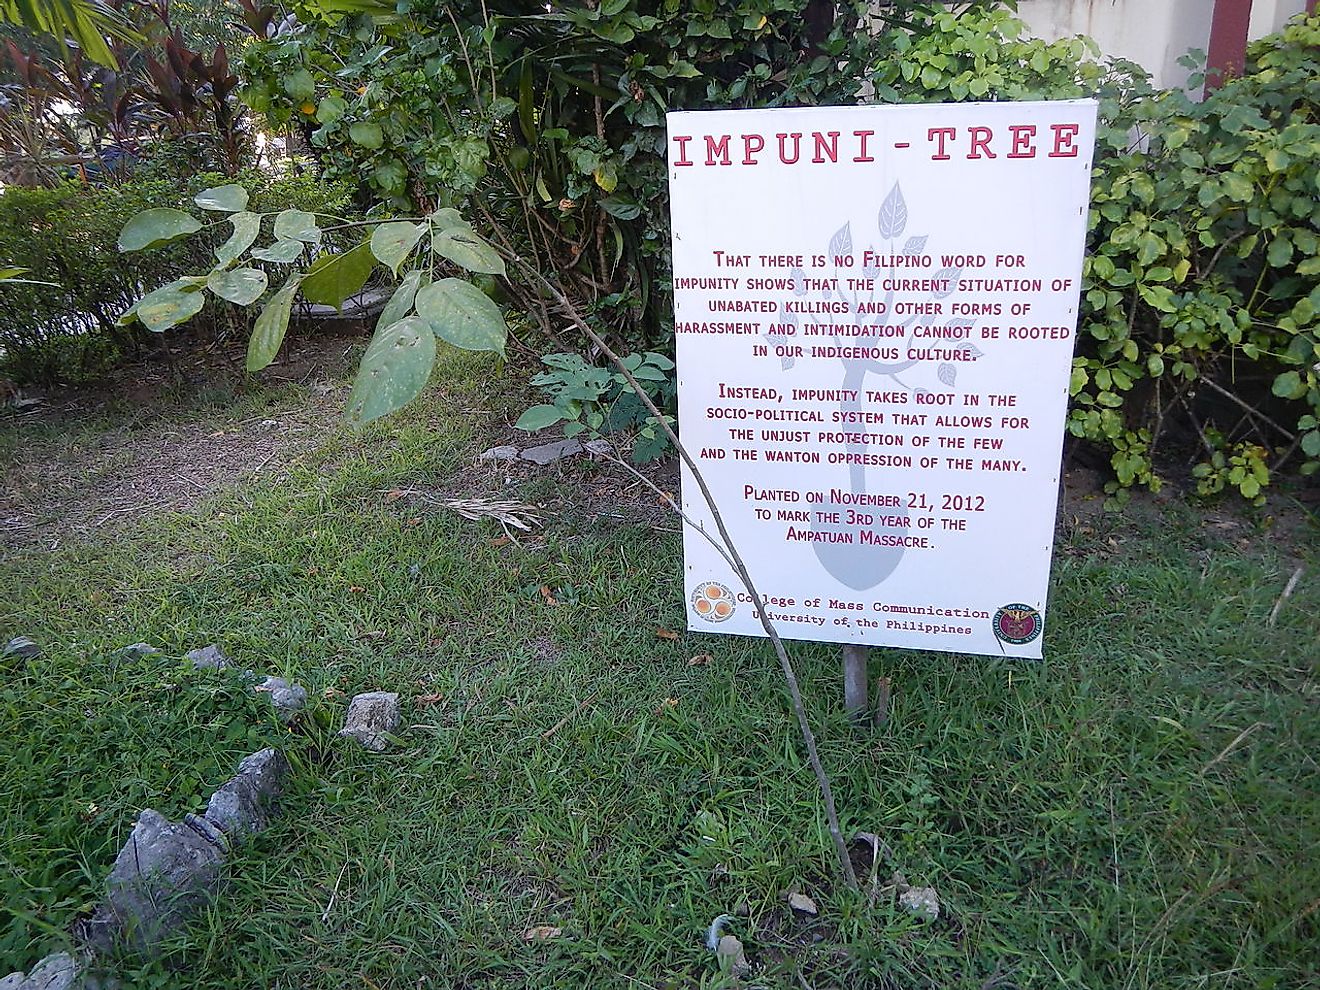 Symbolic 'Impuni-tree' planted for 3rd anniversary of Maguindanao massacre. Image credit: Ramon FVelasquez /Wikimedia.org